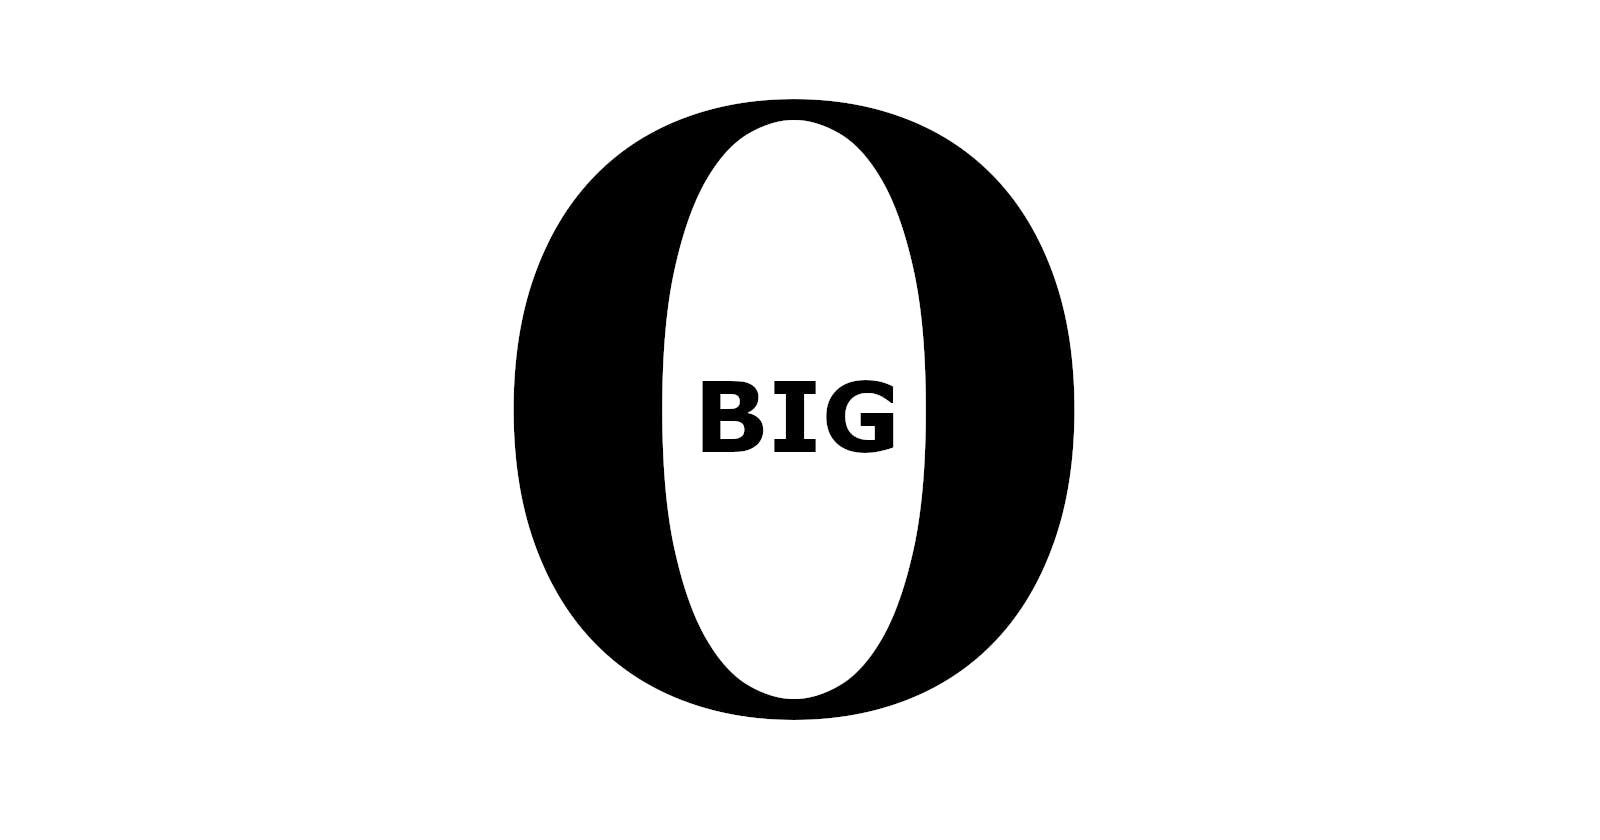 Introduzione alla Big-O Notation